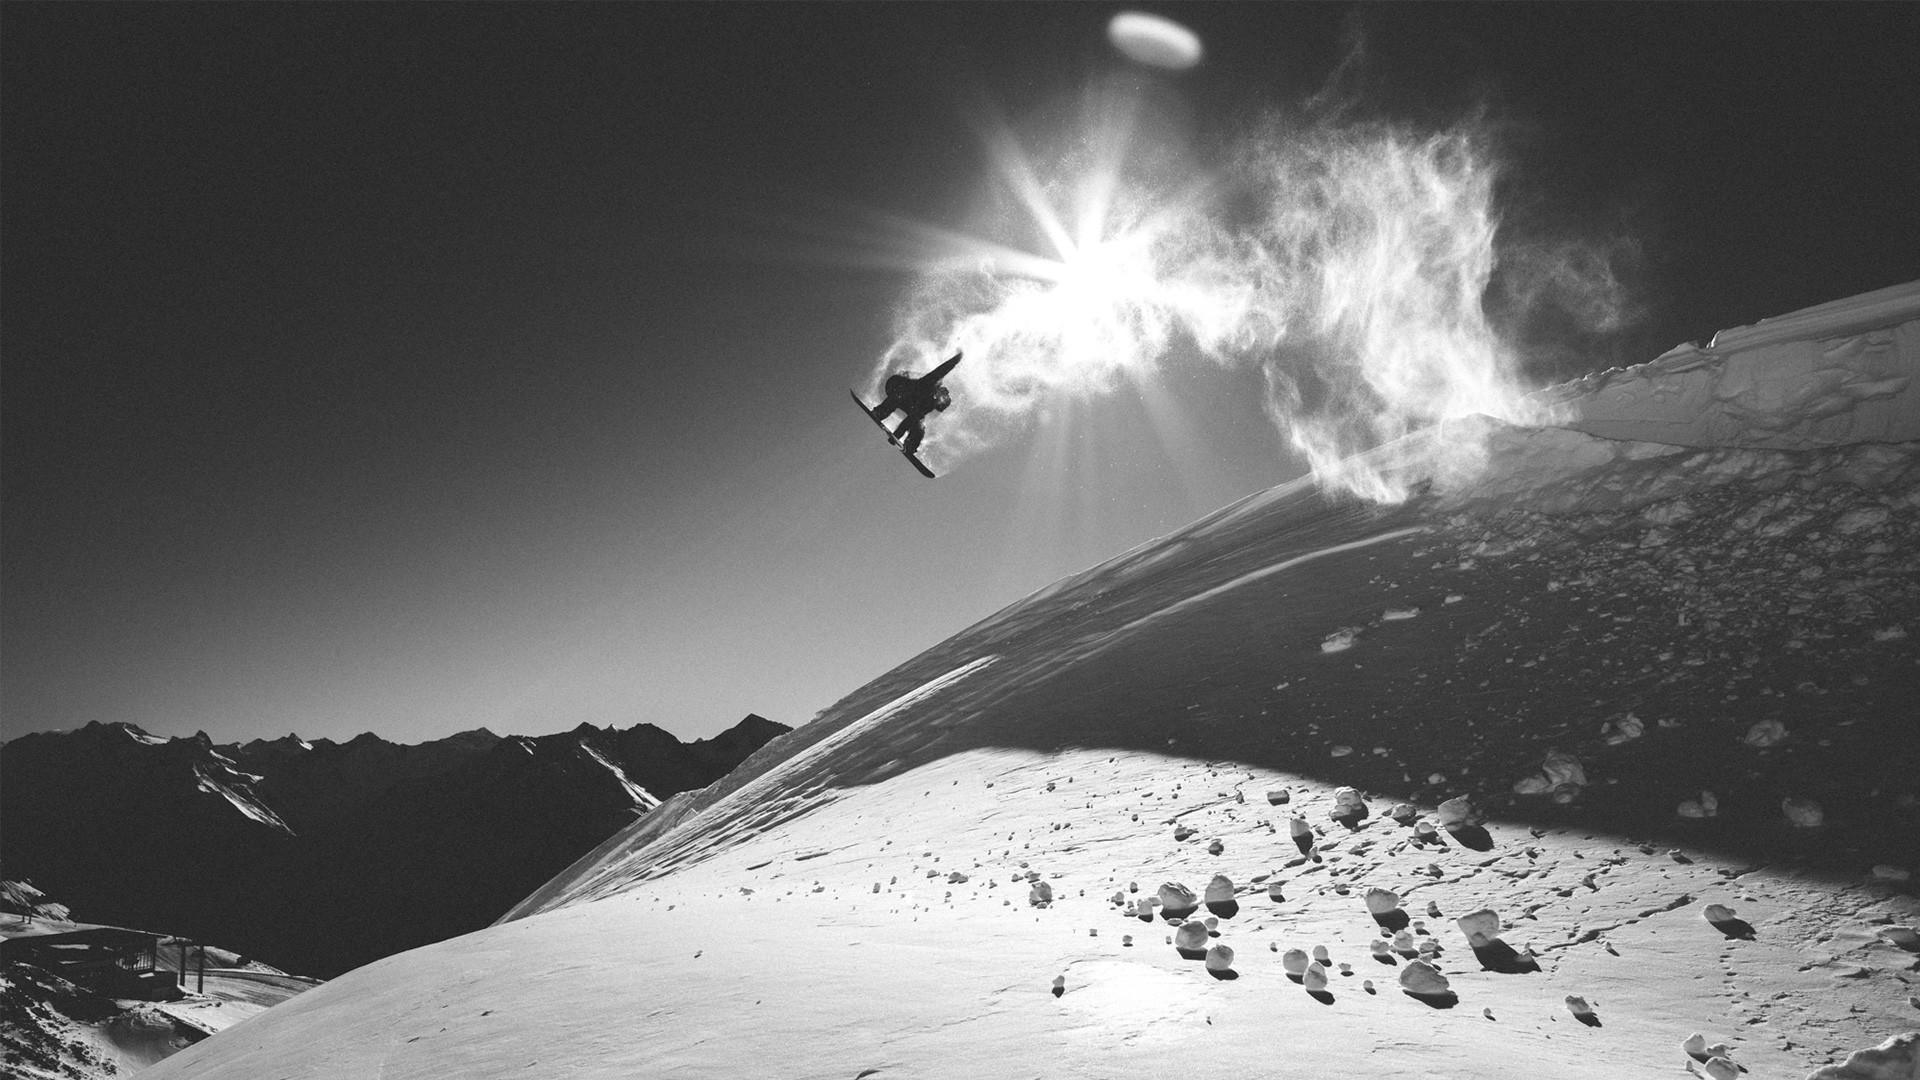 snowboard tapete,schnee,snowboard,freestyle ski fahren,extremsport,snowboarden